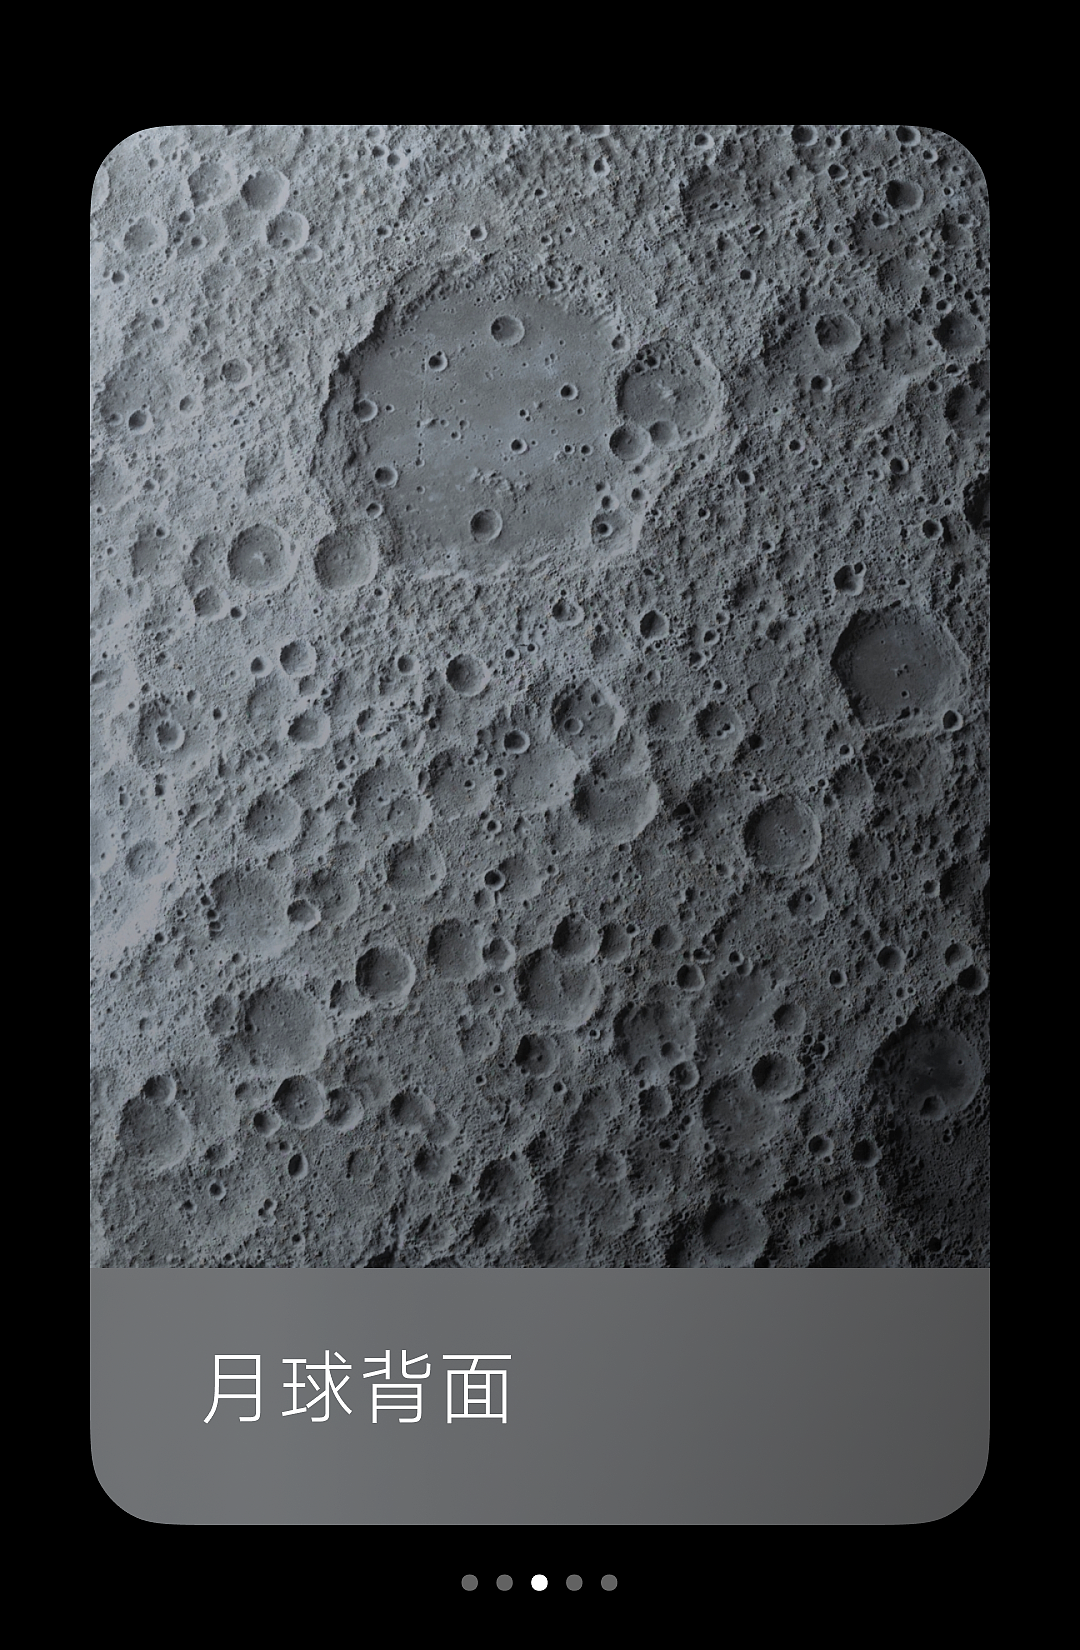 小米超级壁纸新增“月球”主题：基于澎湃 OS 图形子系统，内存占用大幅降低 - 5